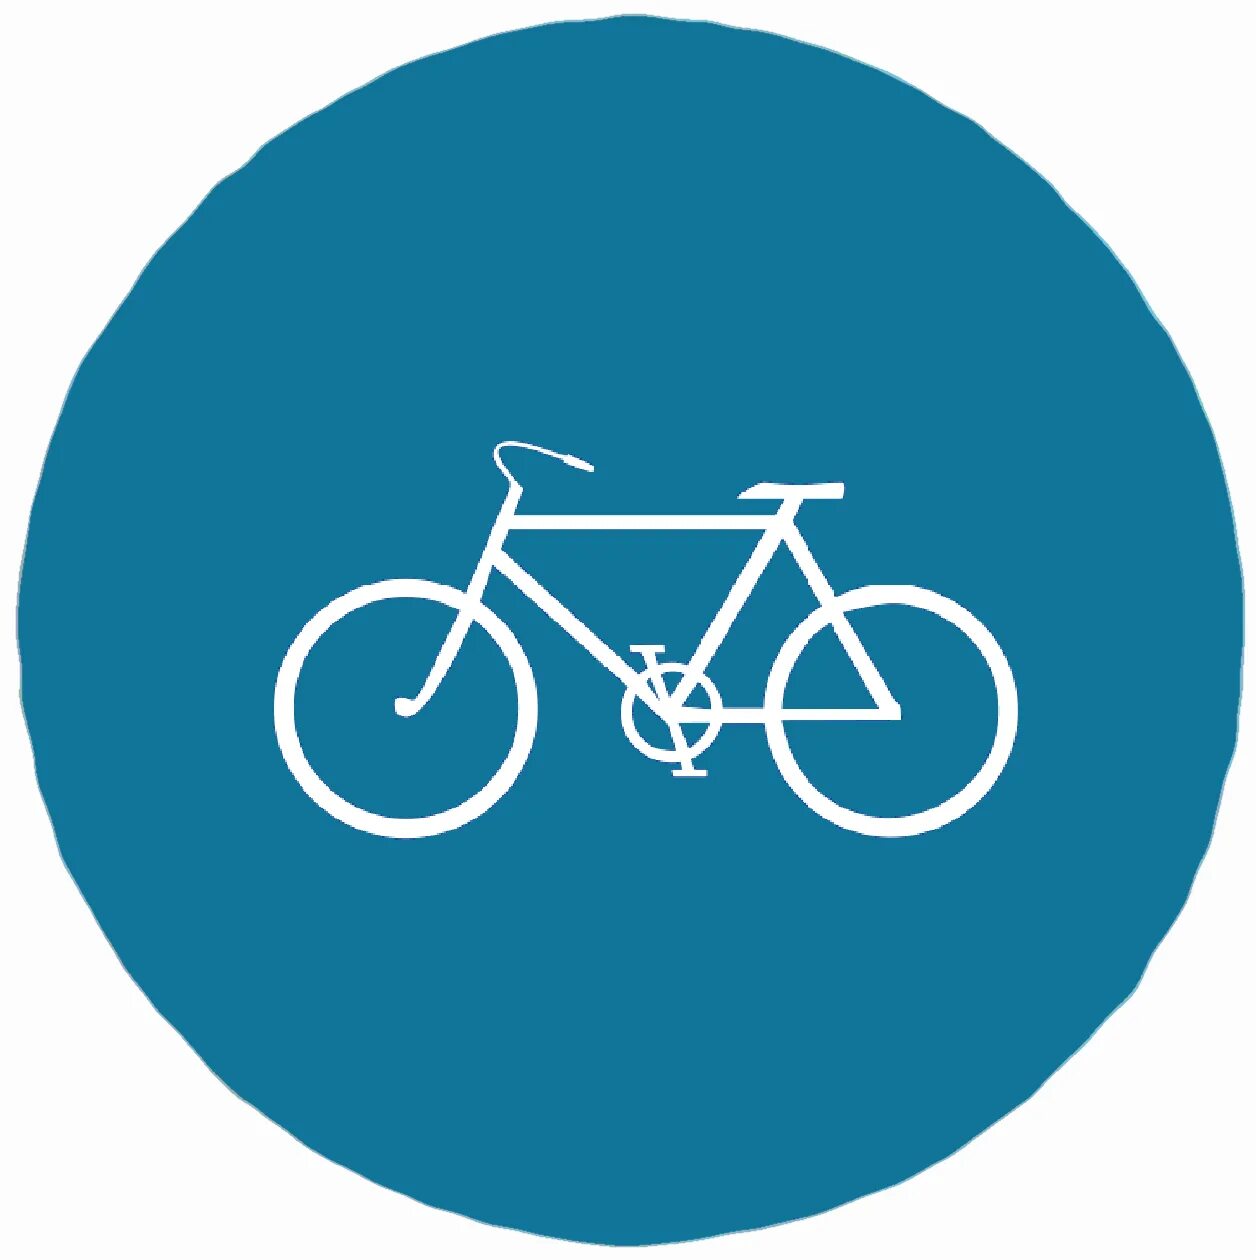 Велосипед в круге дорожный. Круглый знак с велосипедом. Дорожный знак с велосипедом в круге. Велосипед в синем круге. Знак велосипедная дорожка.